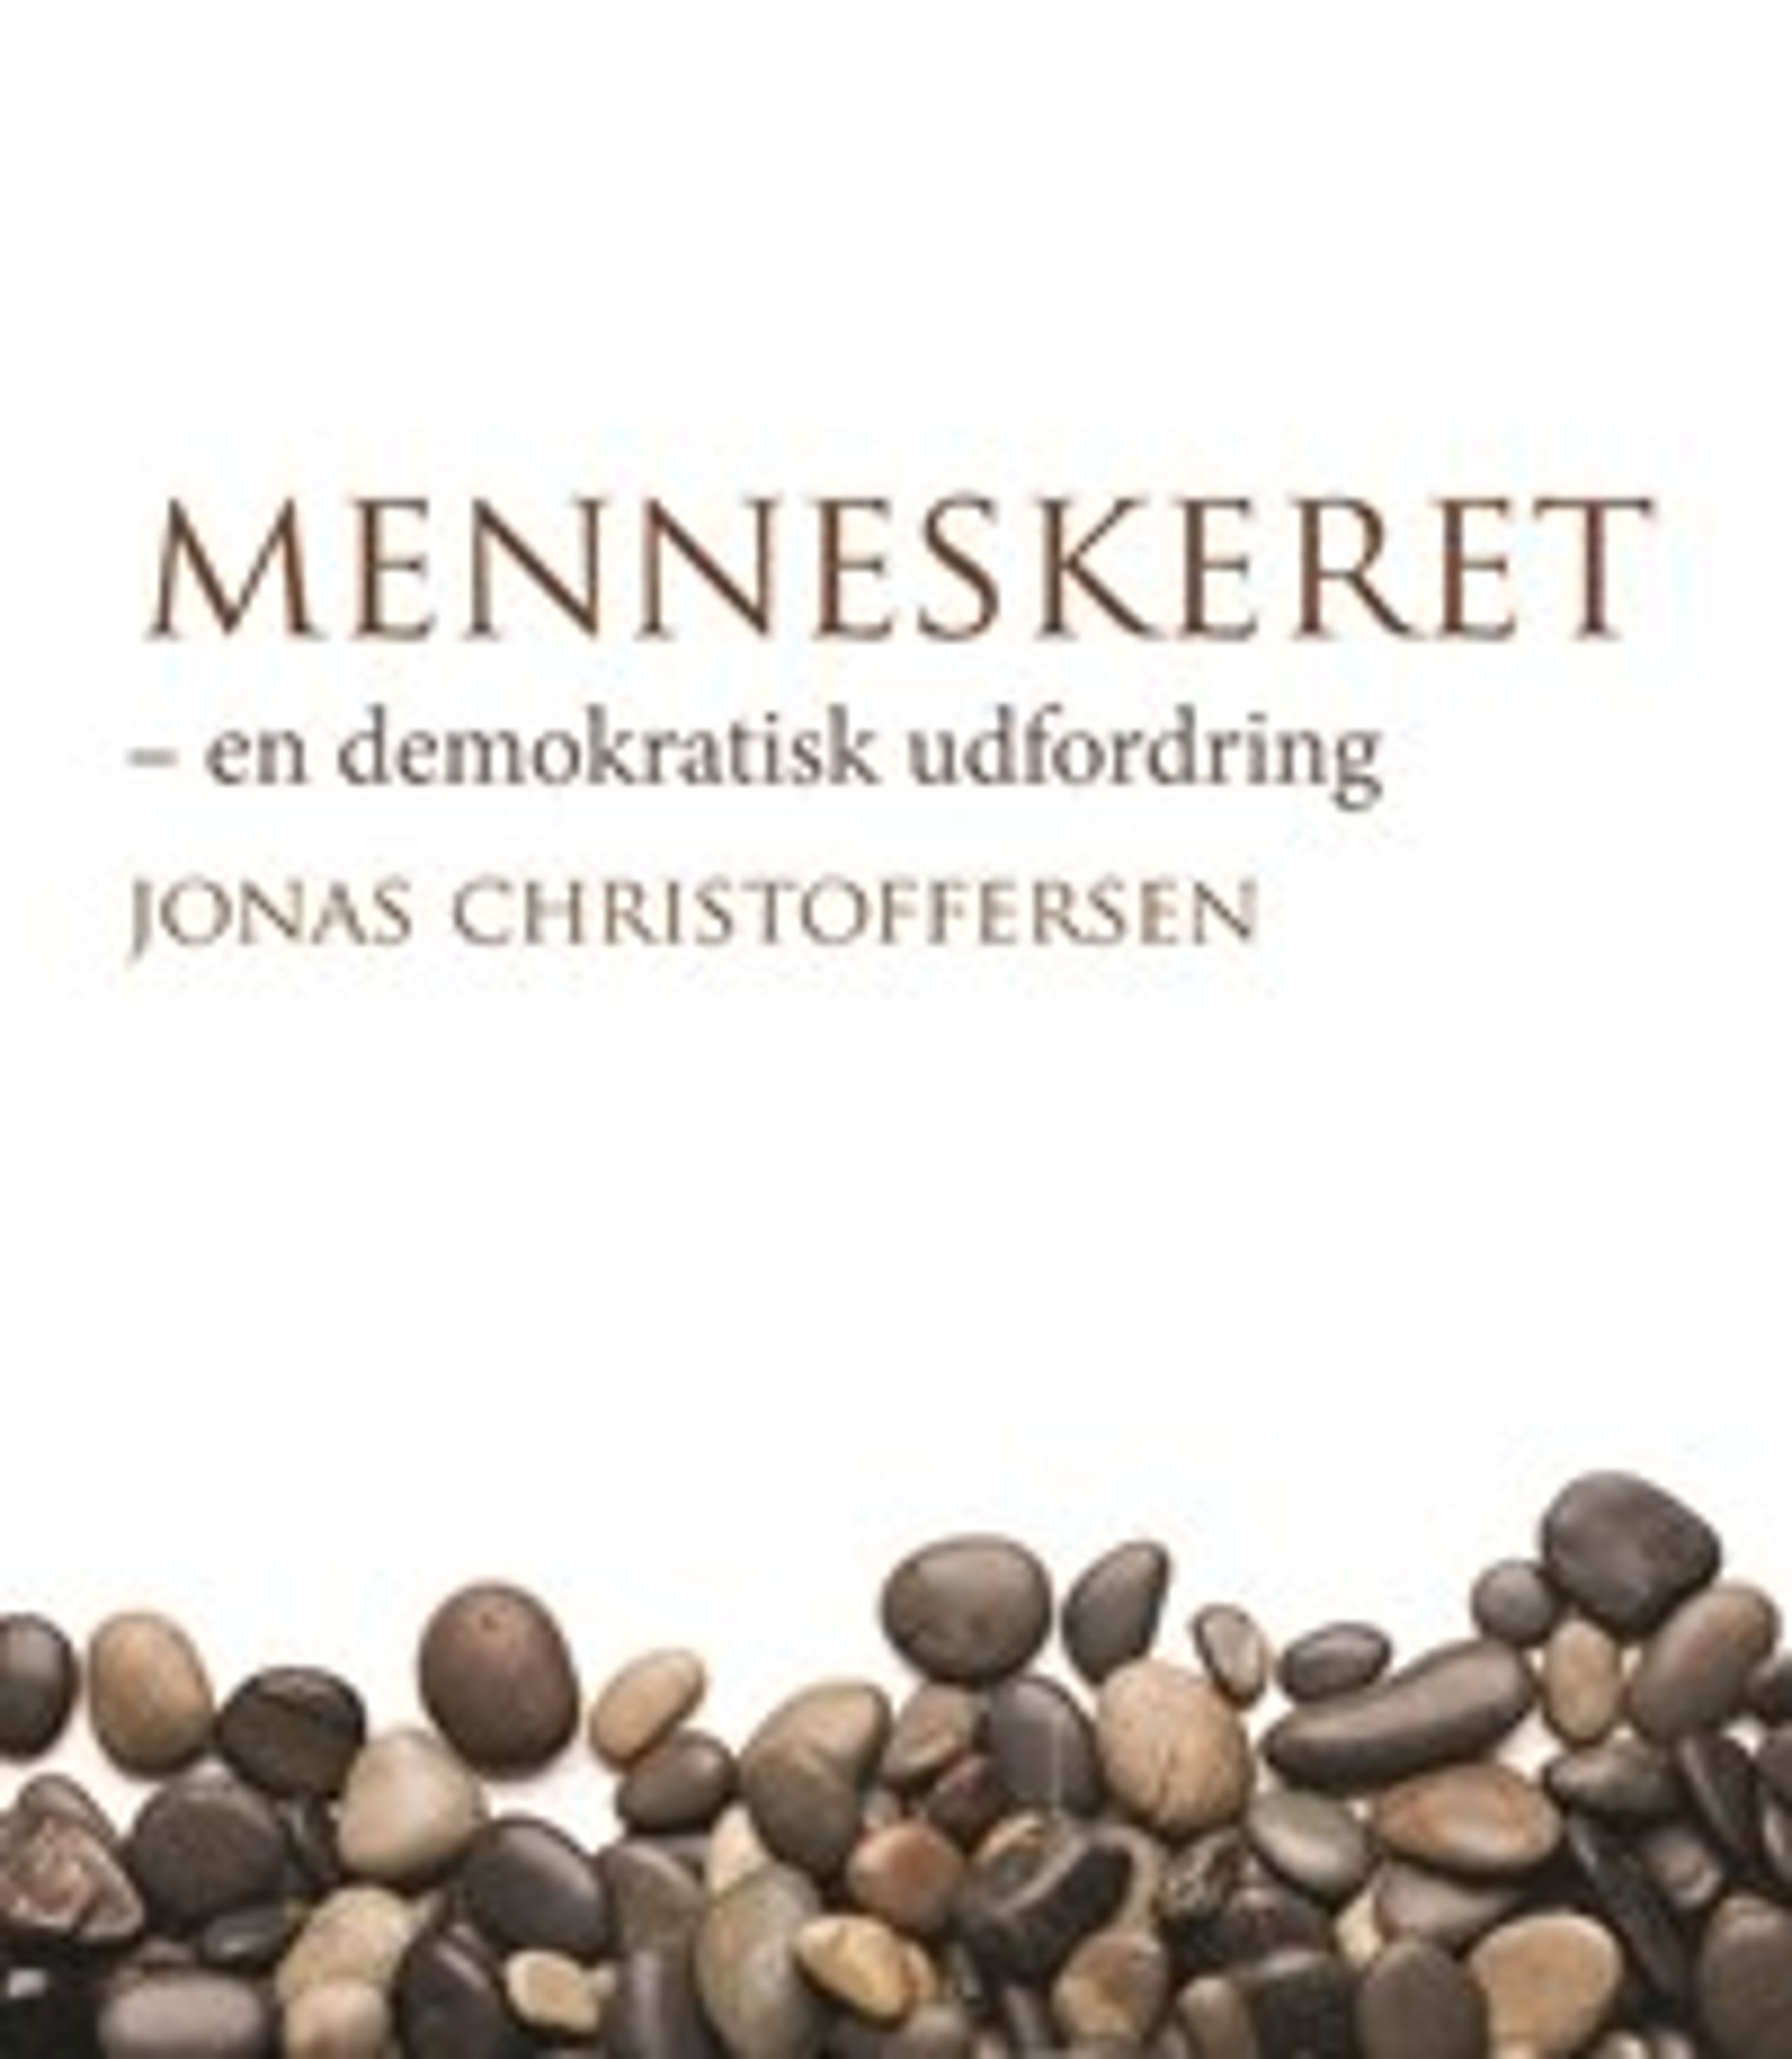 Jonas Christoffersen, direktør Institut for Menneskerettigheder, udkommer fredag den 3. oktober med sin nye bog 'Menneskerettigheder - en demokratisk udfordring'.